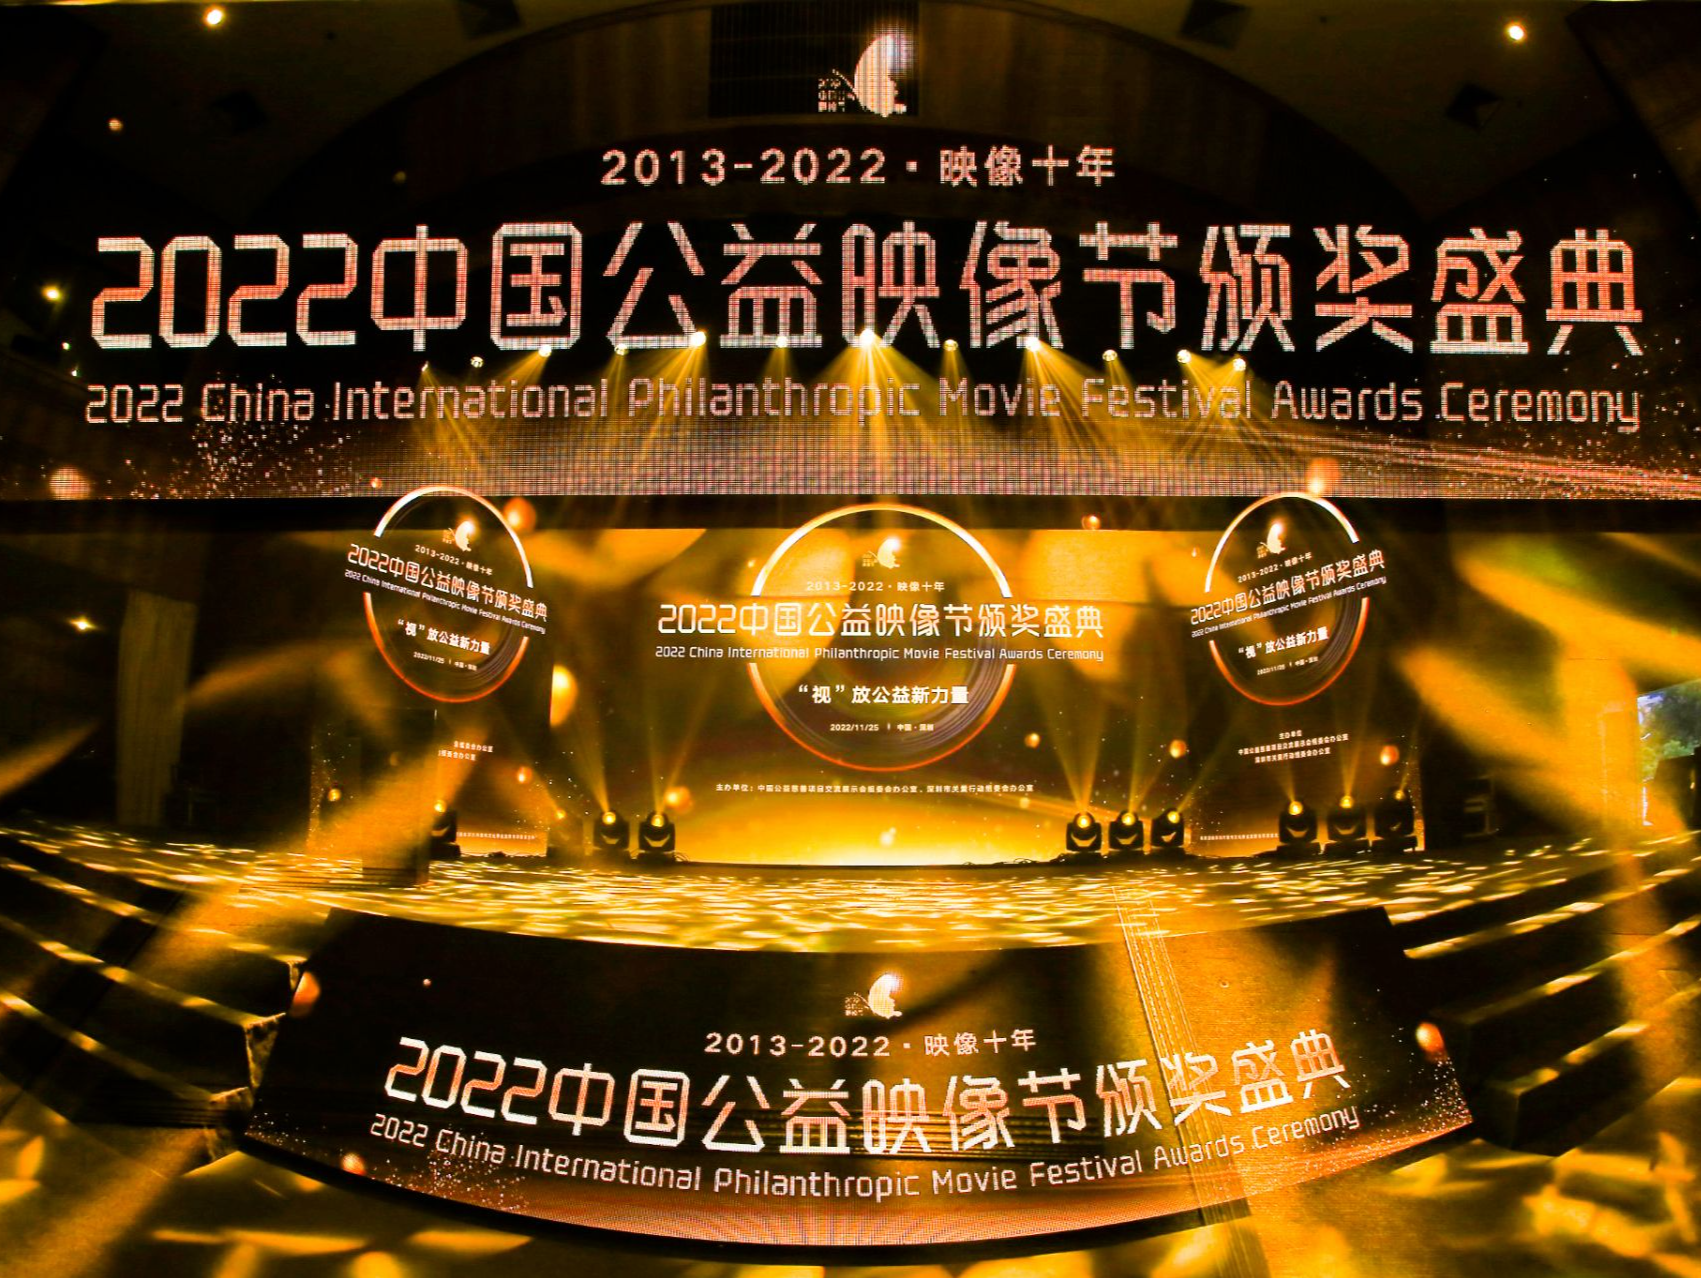 429部影片在2022中国公益映像节传递公益“火种”